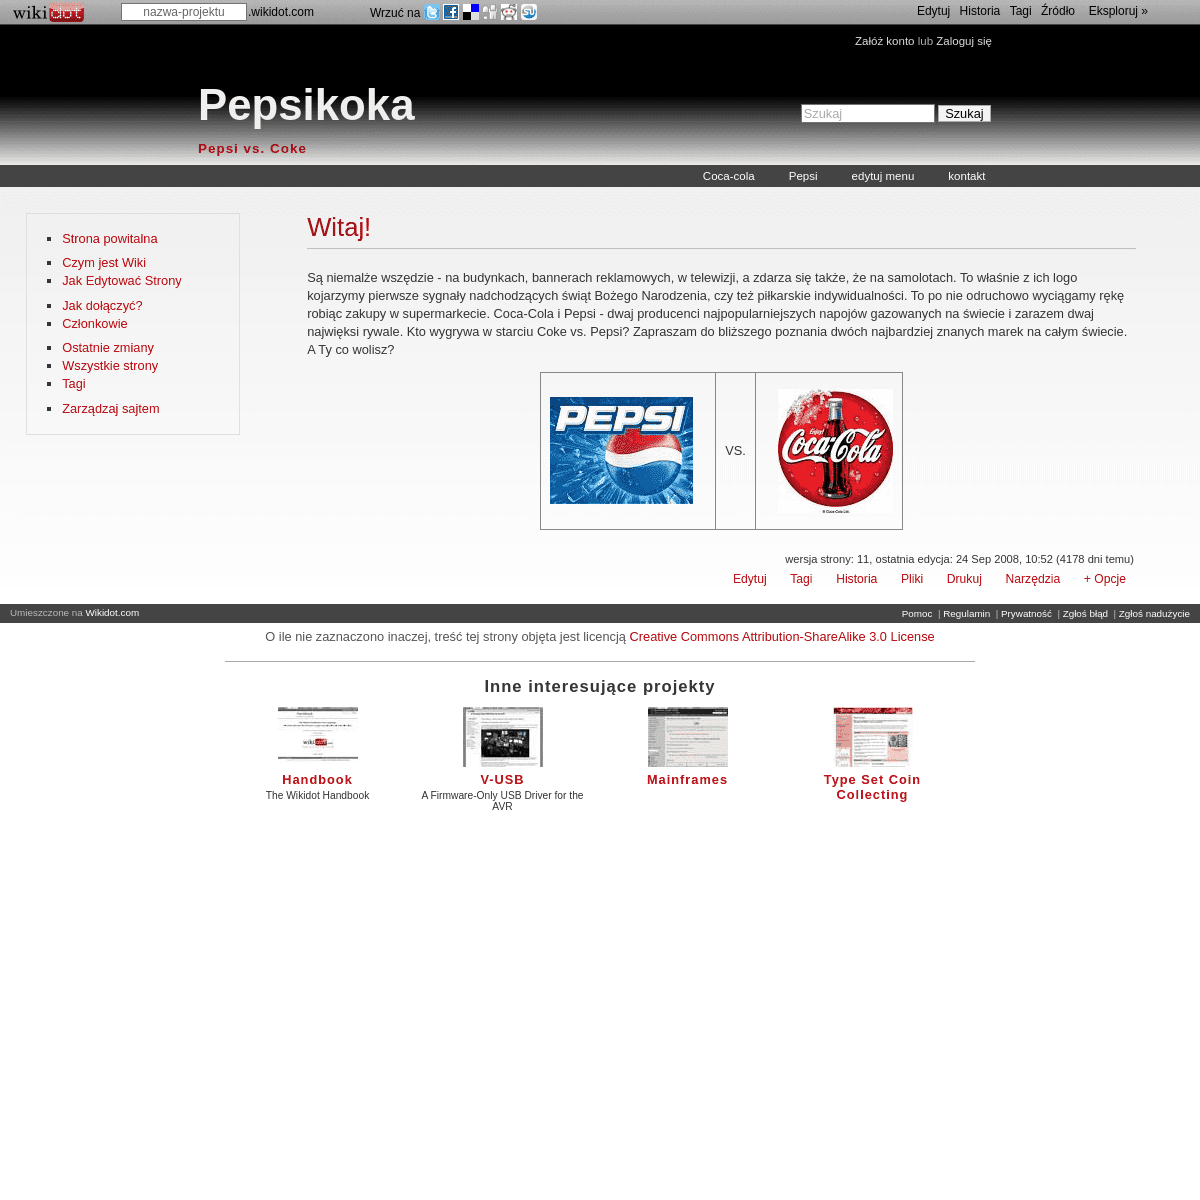 A complete backup of pepsikoka.wikidot.com